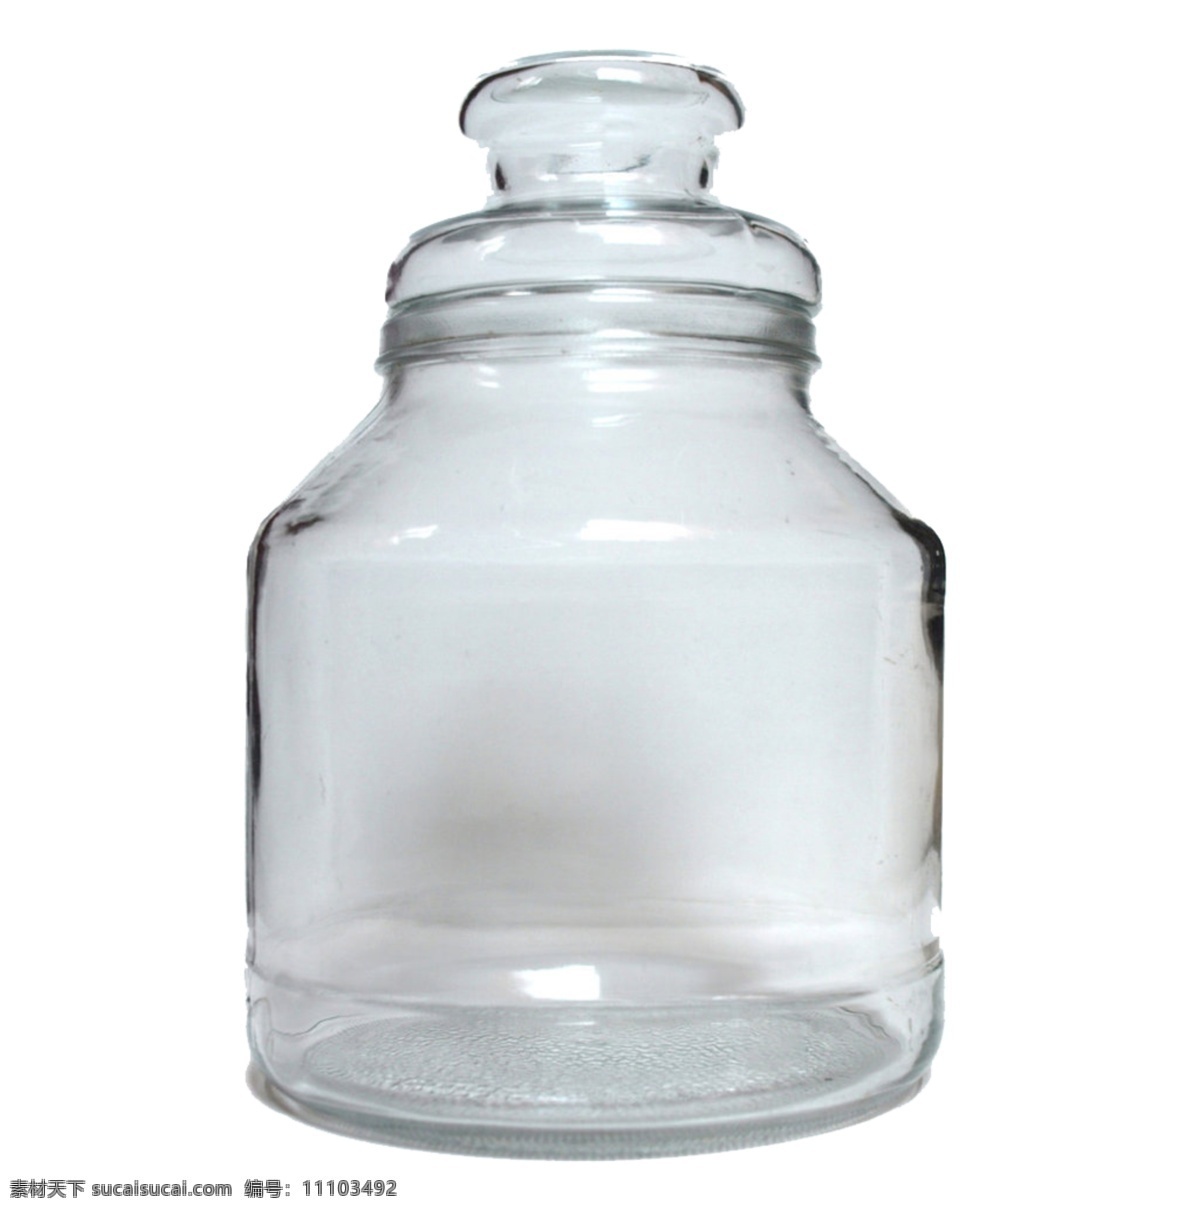 腌菜 玻璃 罐 免 抠 透明 腌菜用罐头瓶 腌菜用玻璃瓶 空 玻璃瓶 腌菜用玻璃罐 玻璃瓶素材 罐头瓶图片 罐头瓶素材